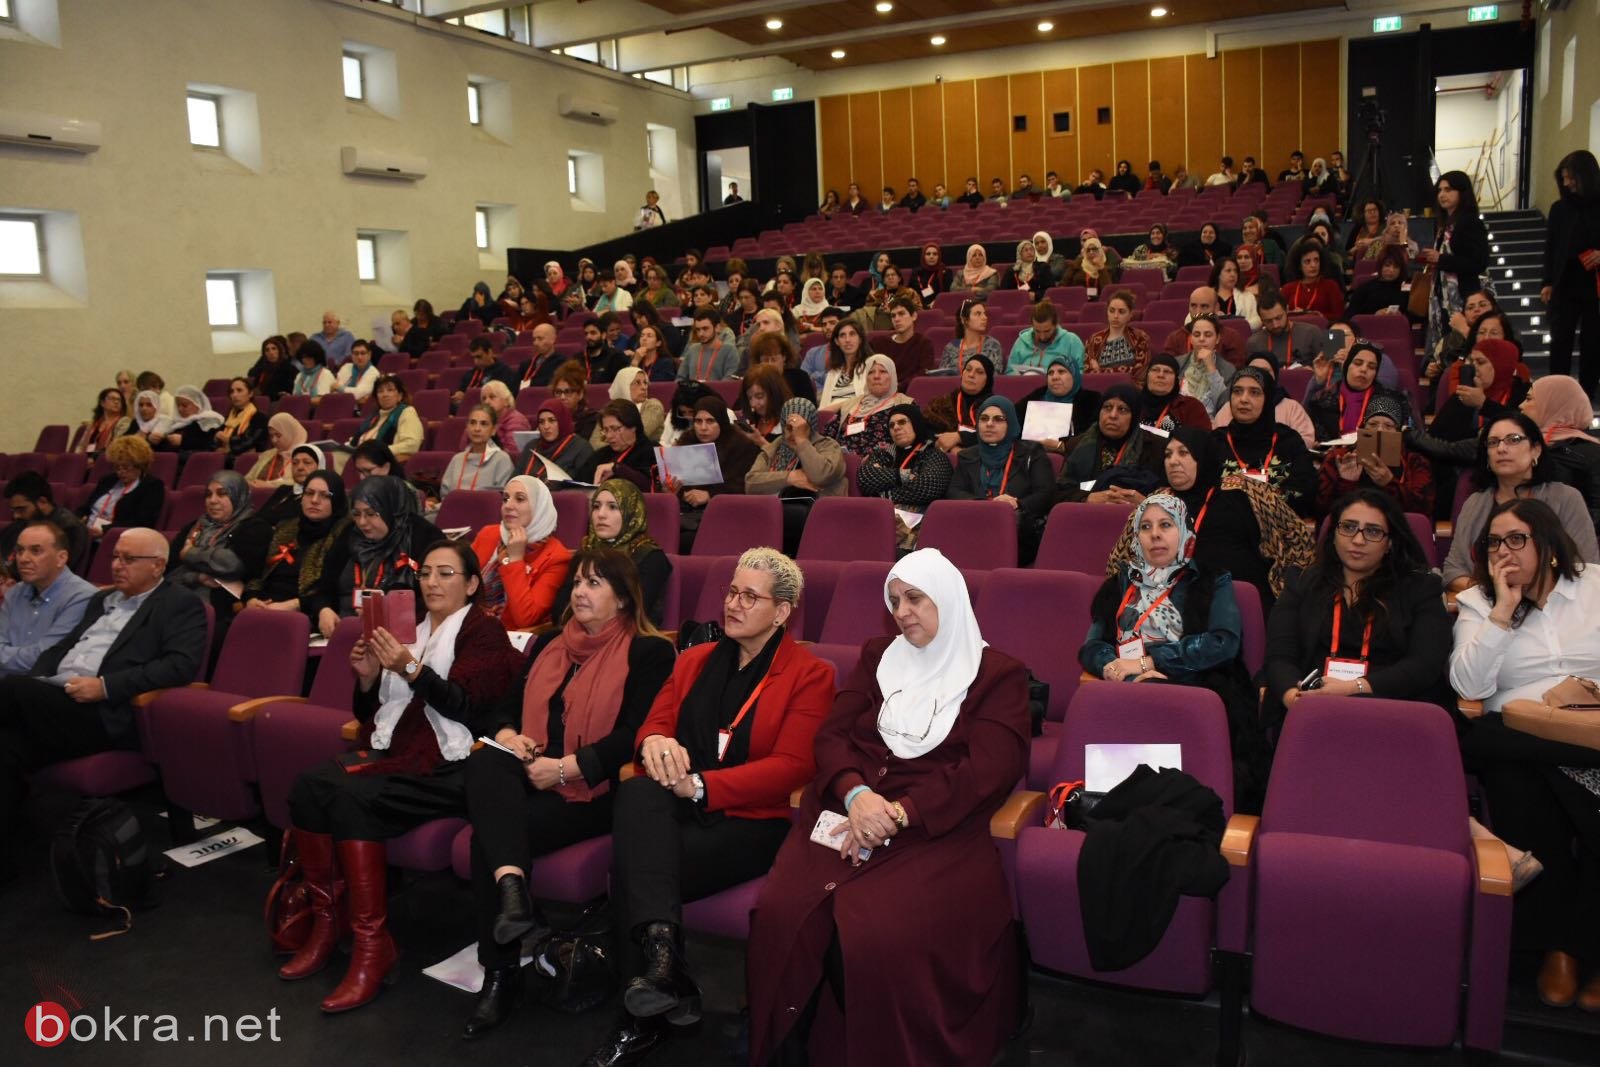 إختتام أعمال مؤتمر "نساء يقدن التغيير الإجتماعي" في جفعات حبيبة-11